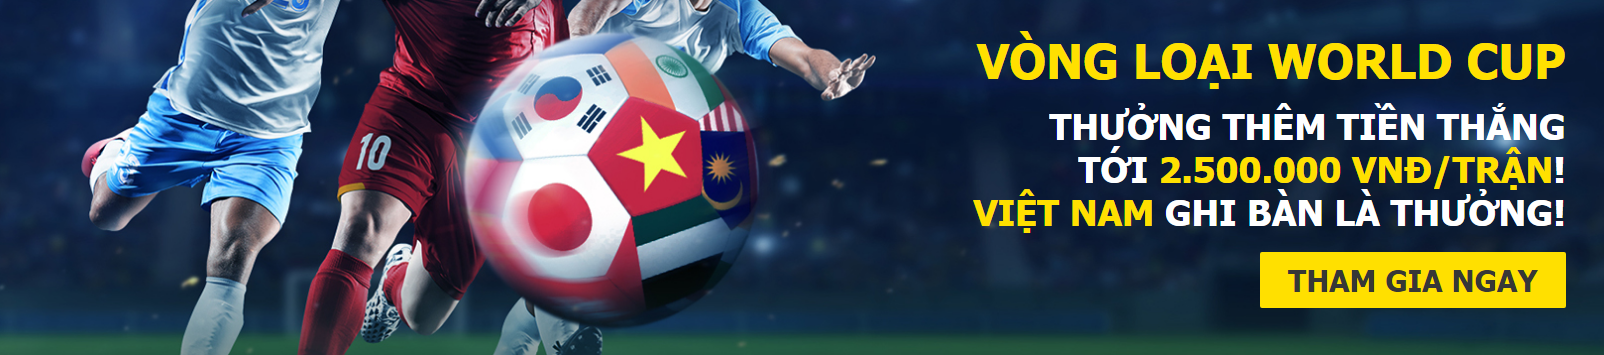 Dafabet khuyến mãi tặng 2.500.000 VNĐ trận đặt cược cho ĐT Việt Nam - thưởng mỗi bàn thắng VN ghi được